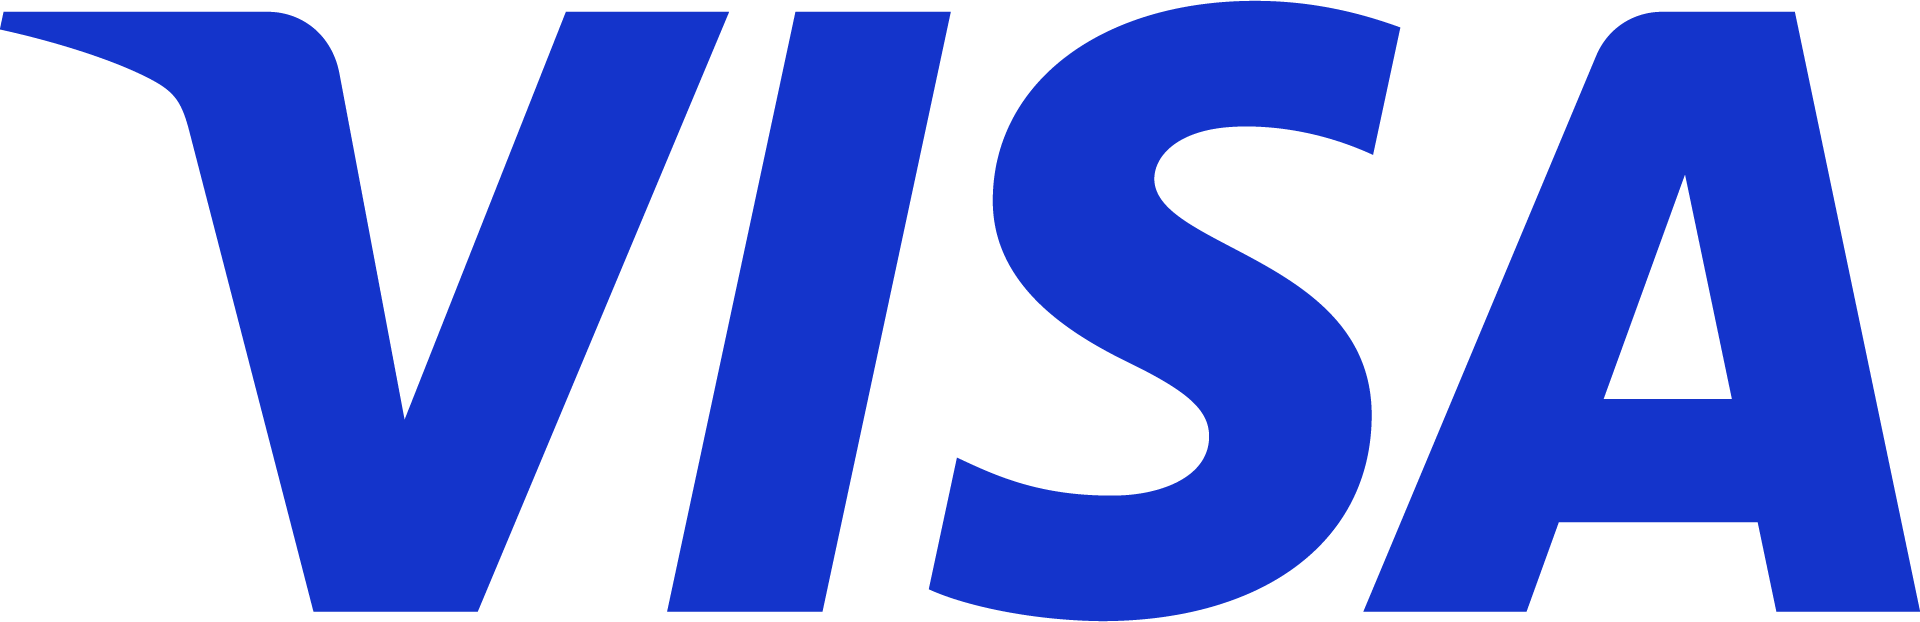 VISA blue logo